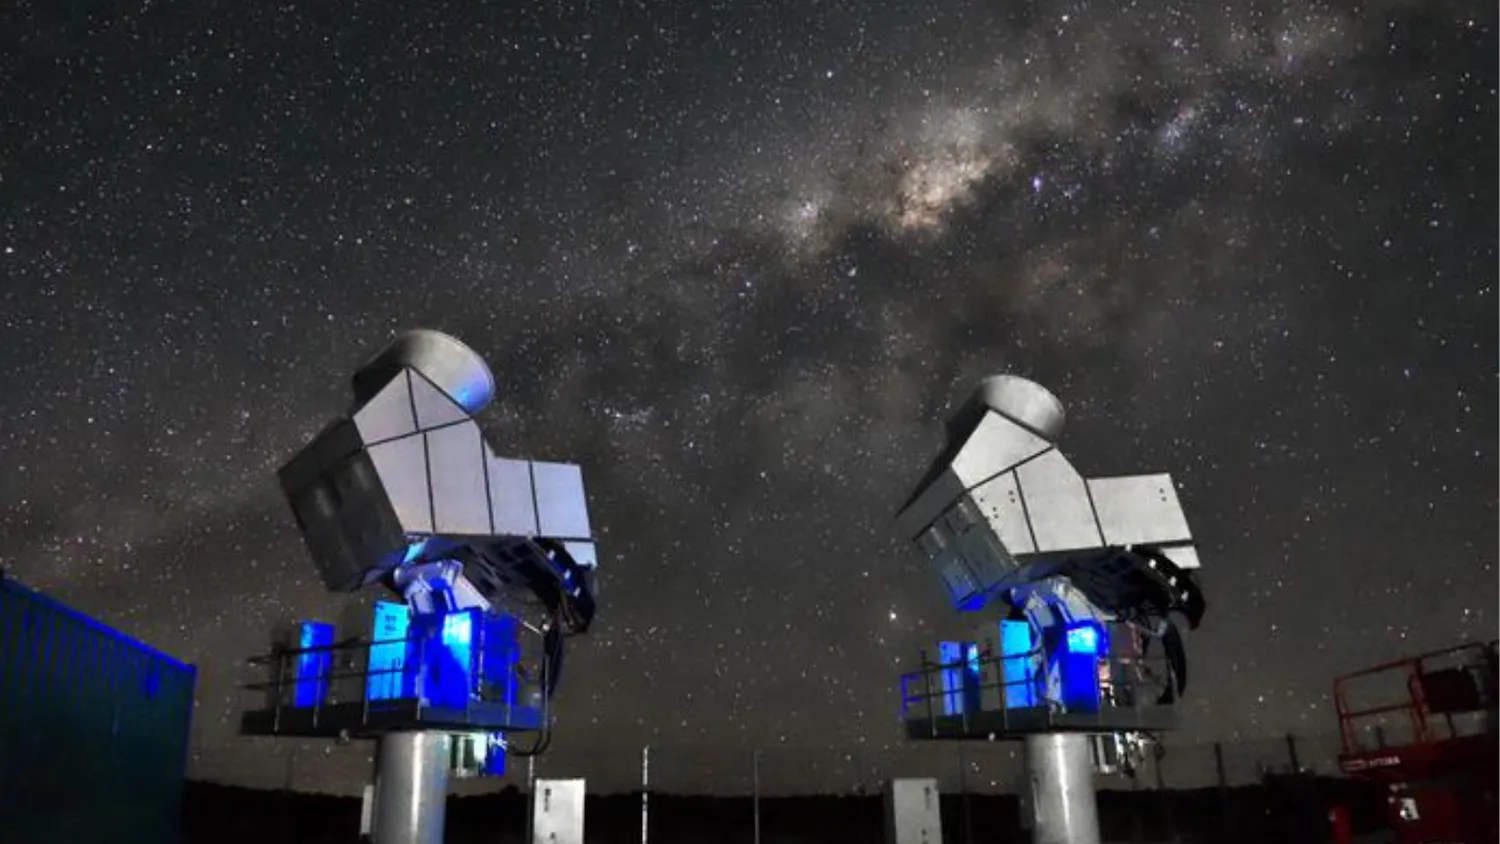 Zwei Metallgeräte mit blauen Lichtern an ihren Hälsen sind in den Himmel gerichtet. Am Himmel sind viele Sterne zu sehen und das Zentrum der Milchstraße ist sichtbar.